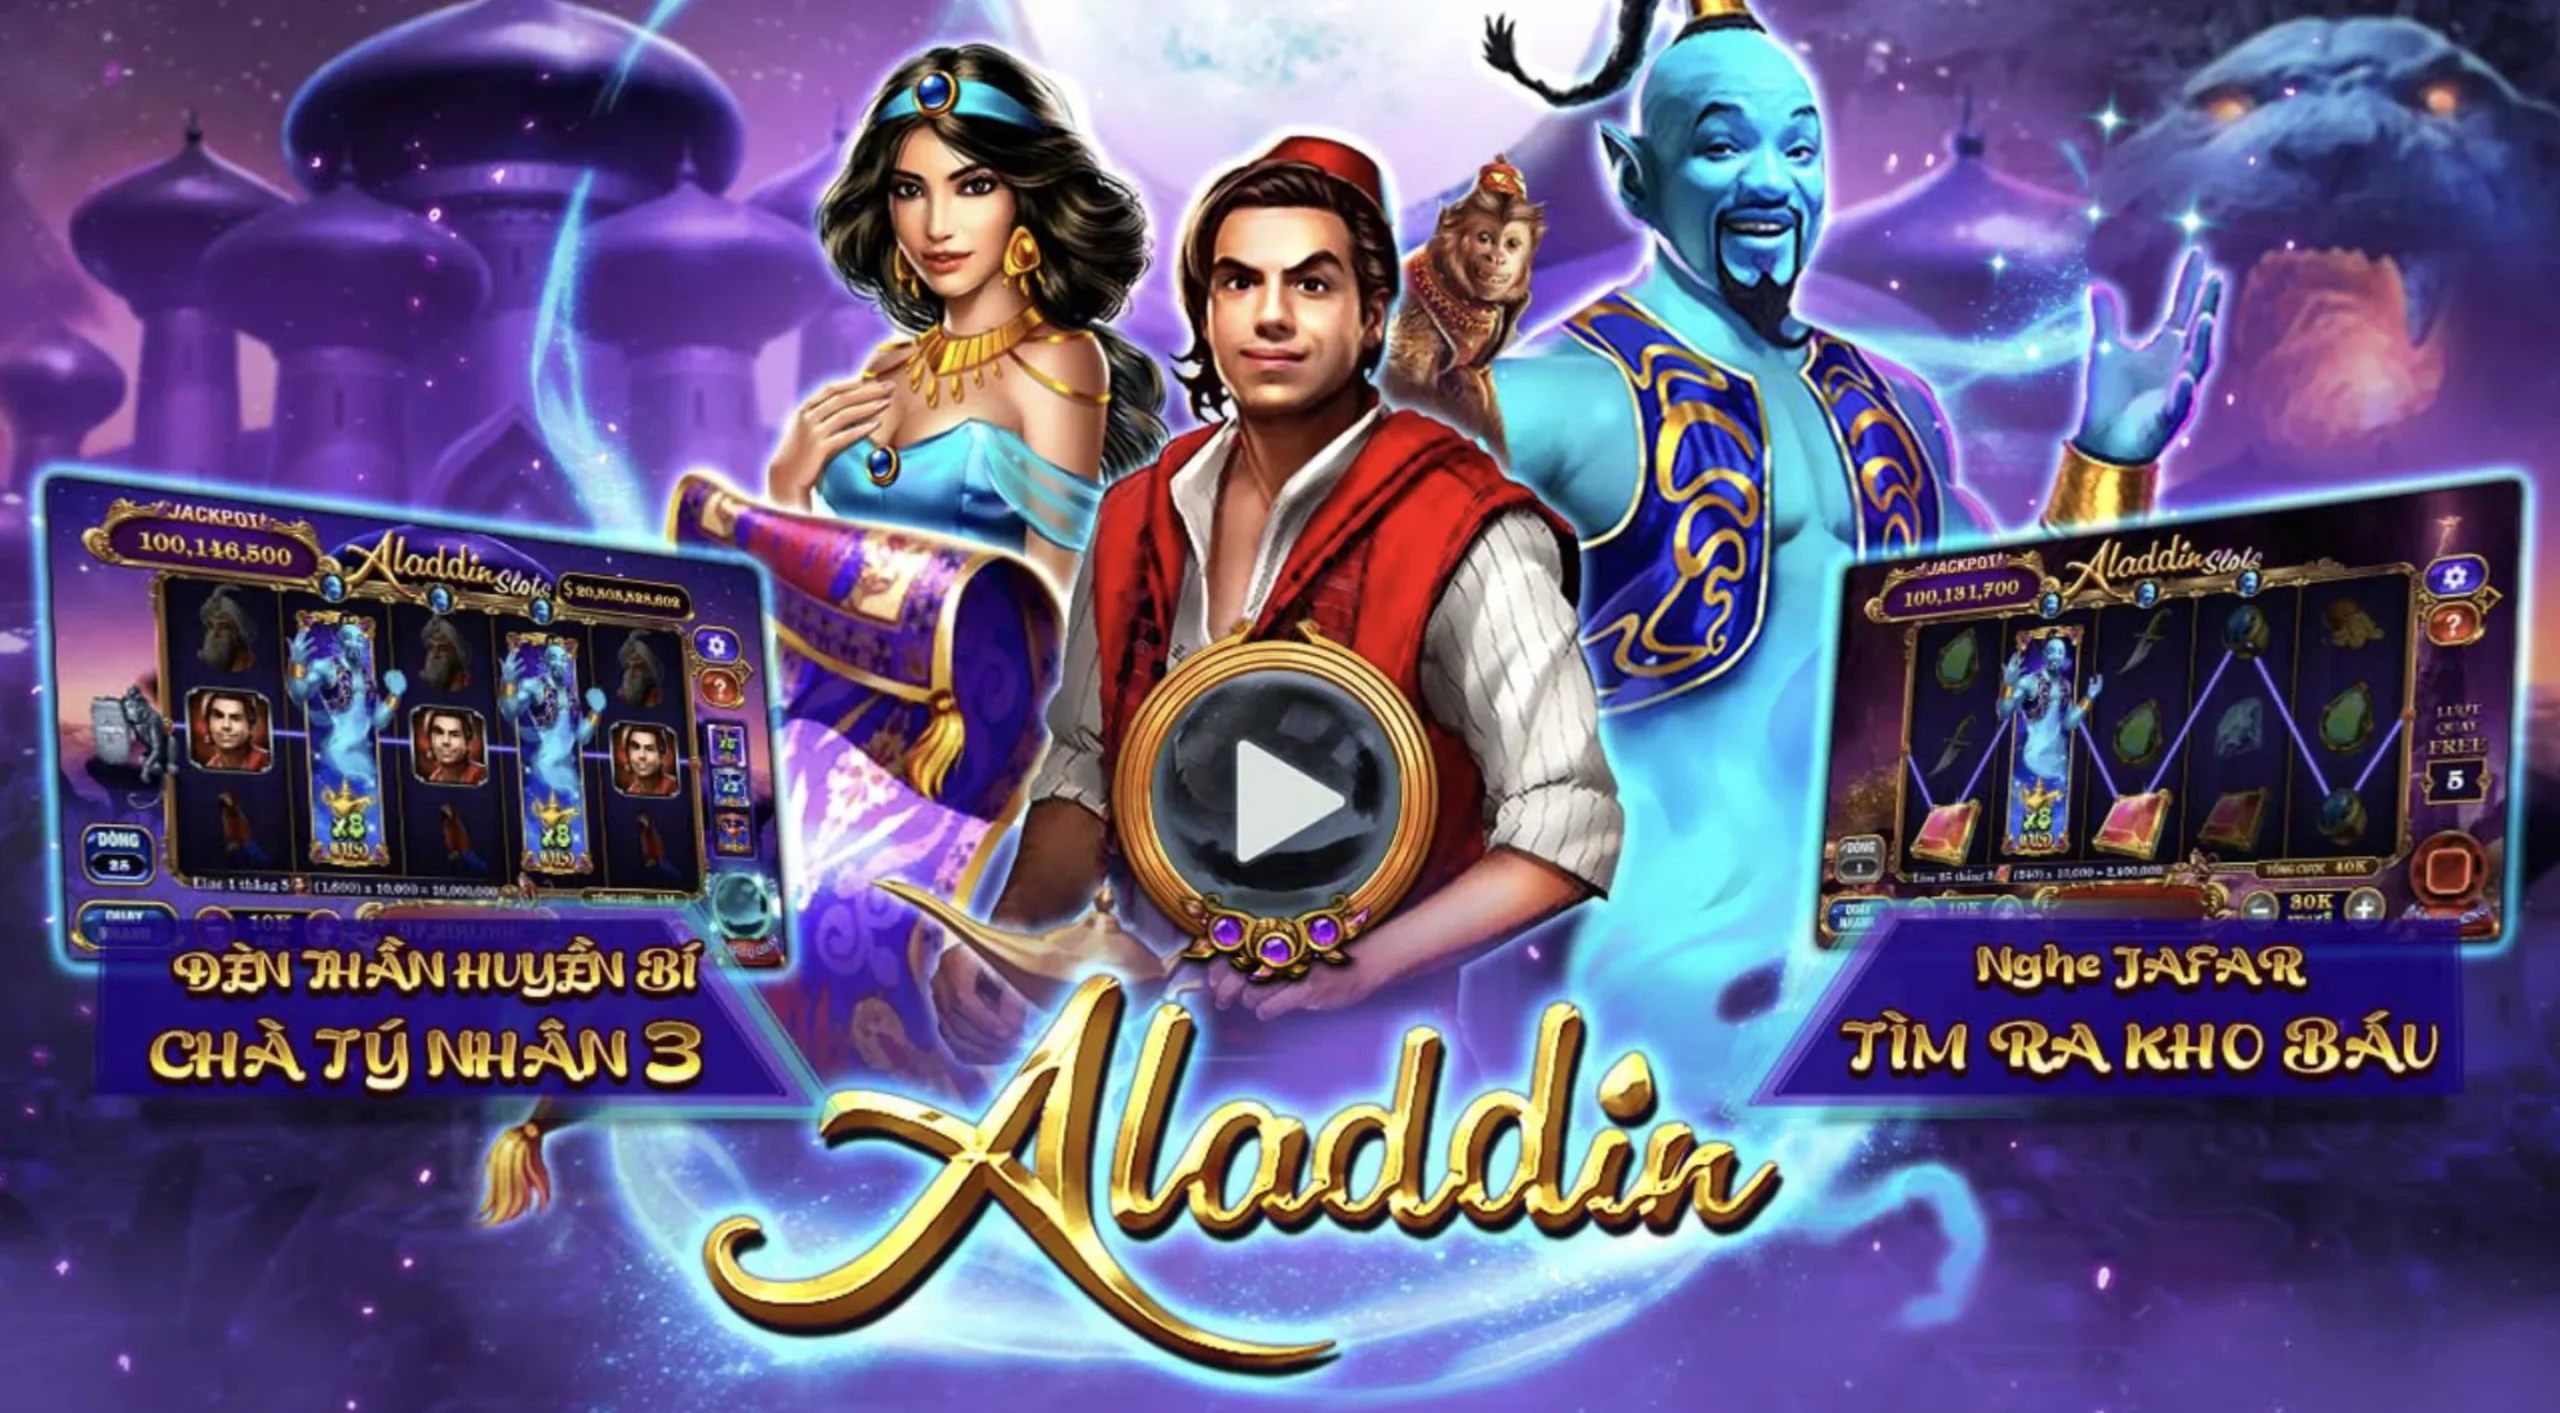 Những thông tin cơ bản về game Aladin tại De bet